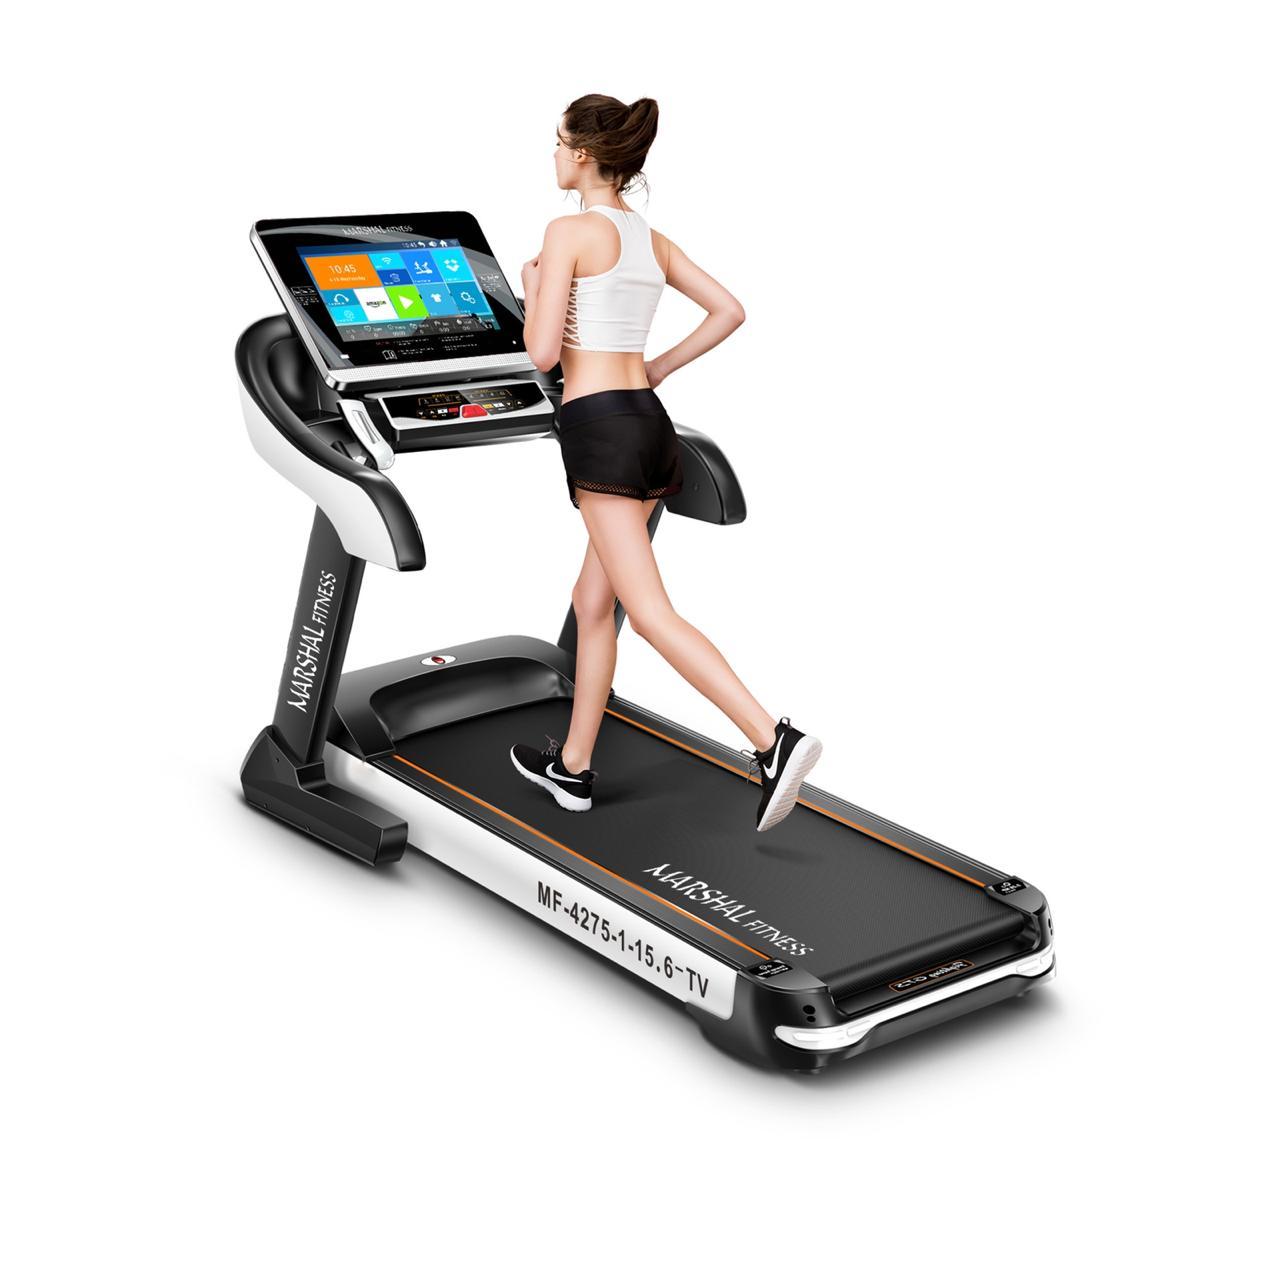 جهاز المشي   DC Motorized Treadmill 6.0 HP with 15.6" TFT TV Android System - cG9zdDoxMTg0MTg=